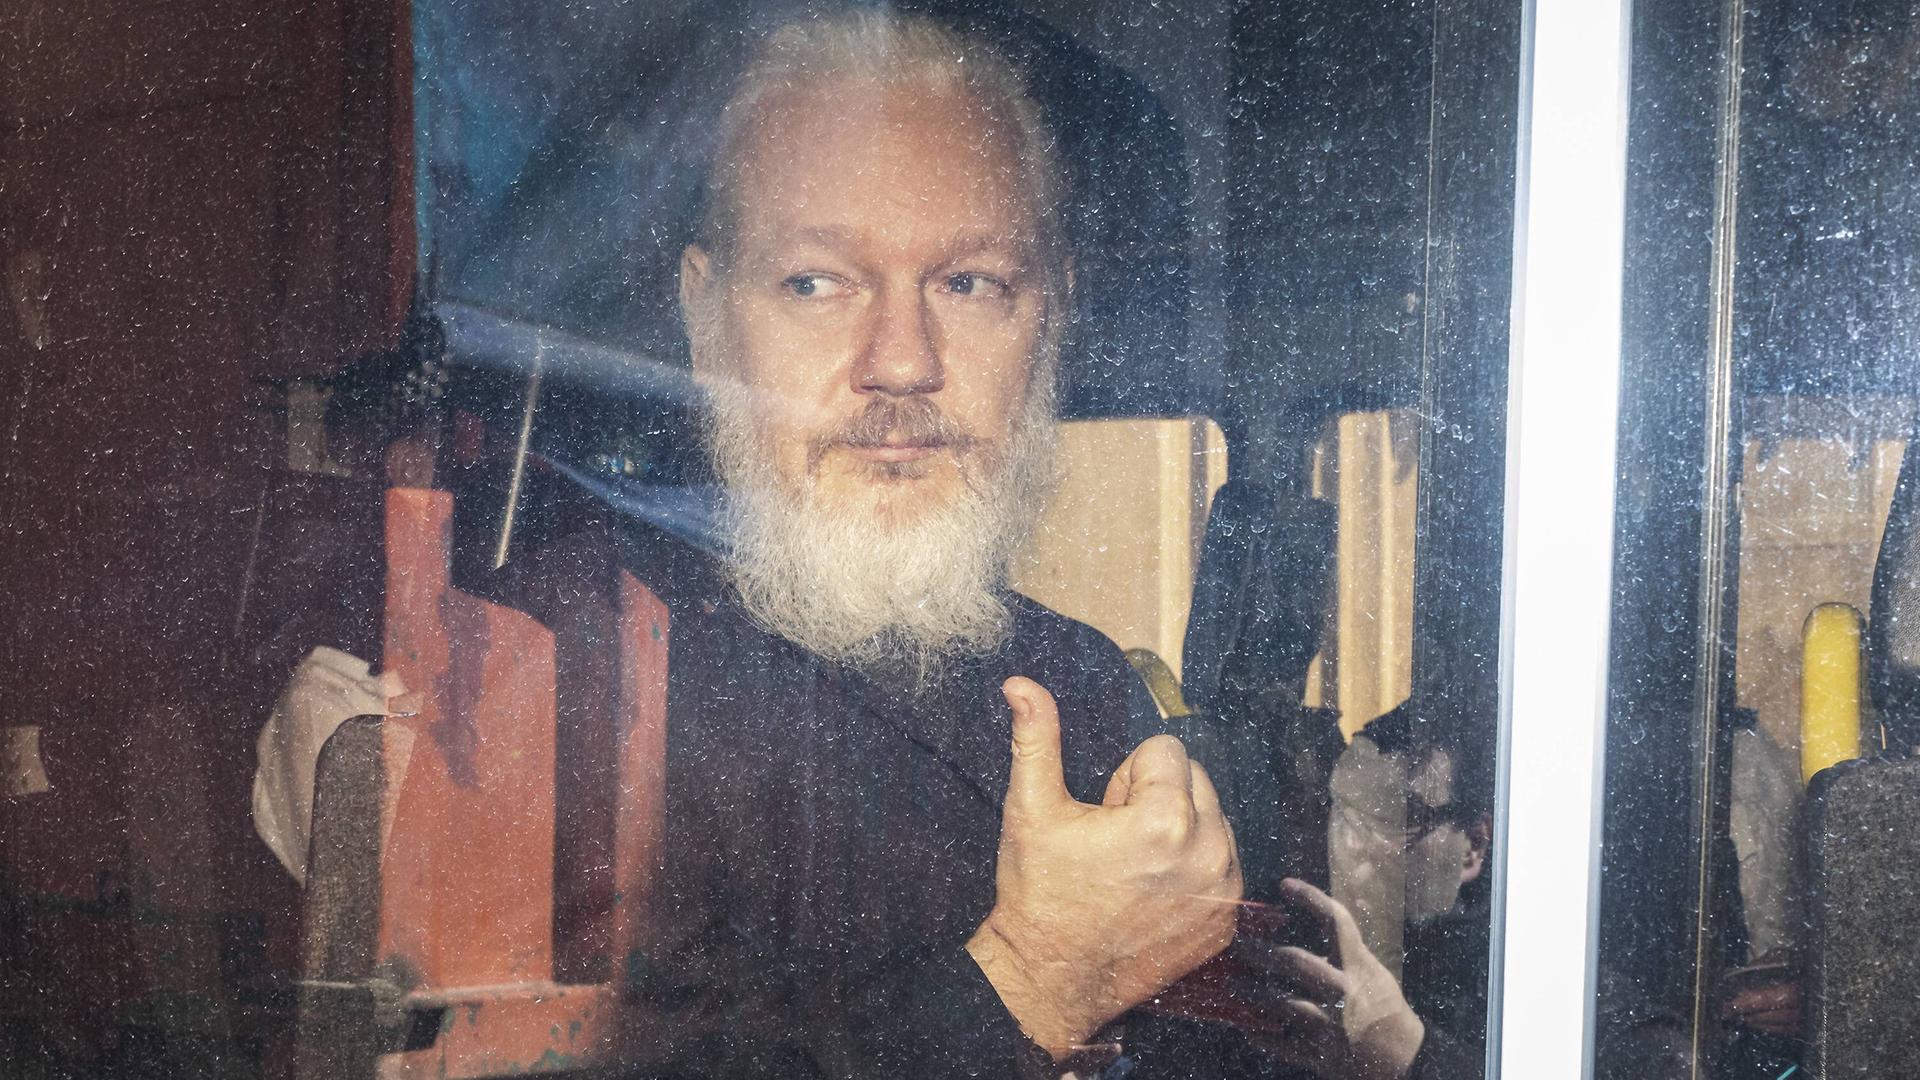 Der Wikileaks-Gründer Julian Assange kommt 2019 am Gericht in Westminster London in einer Polizeieskorte an.